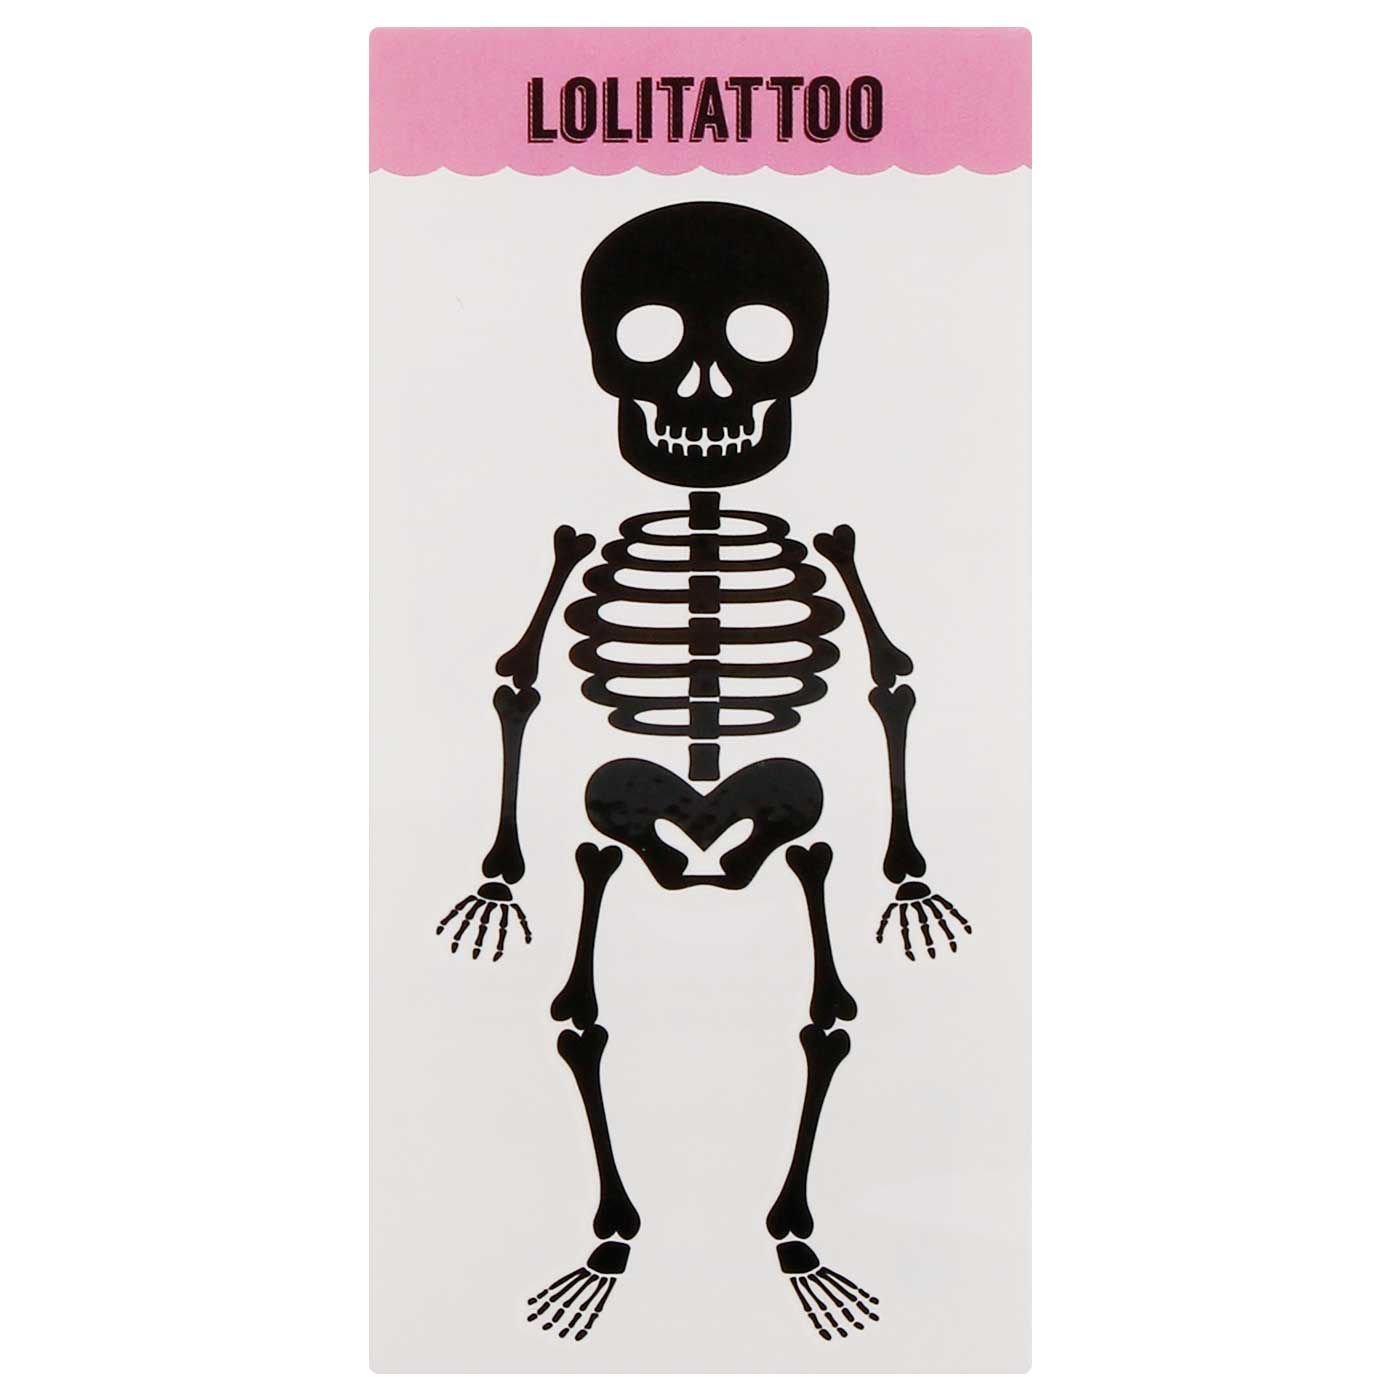 Lolitattoo Skeleton - 1